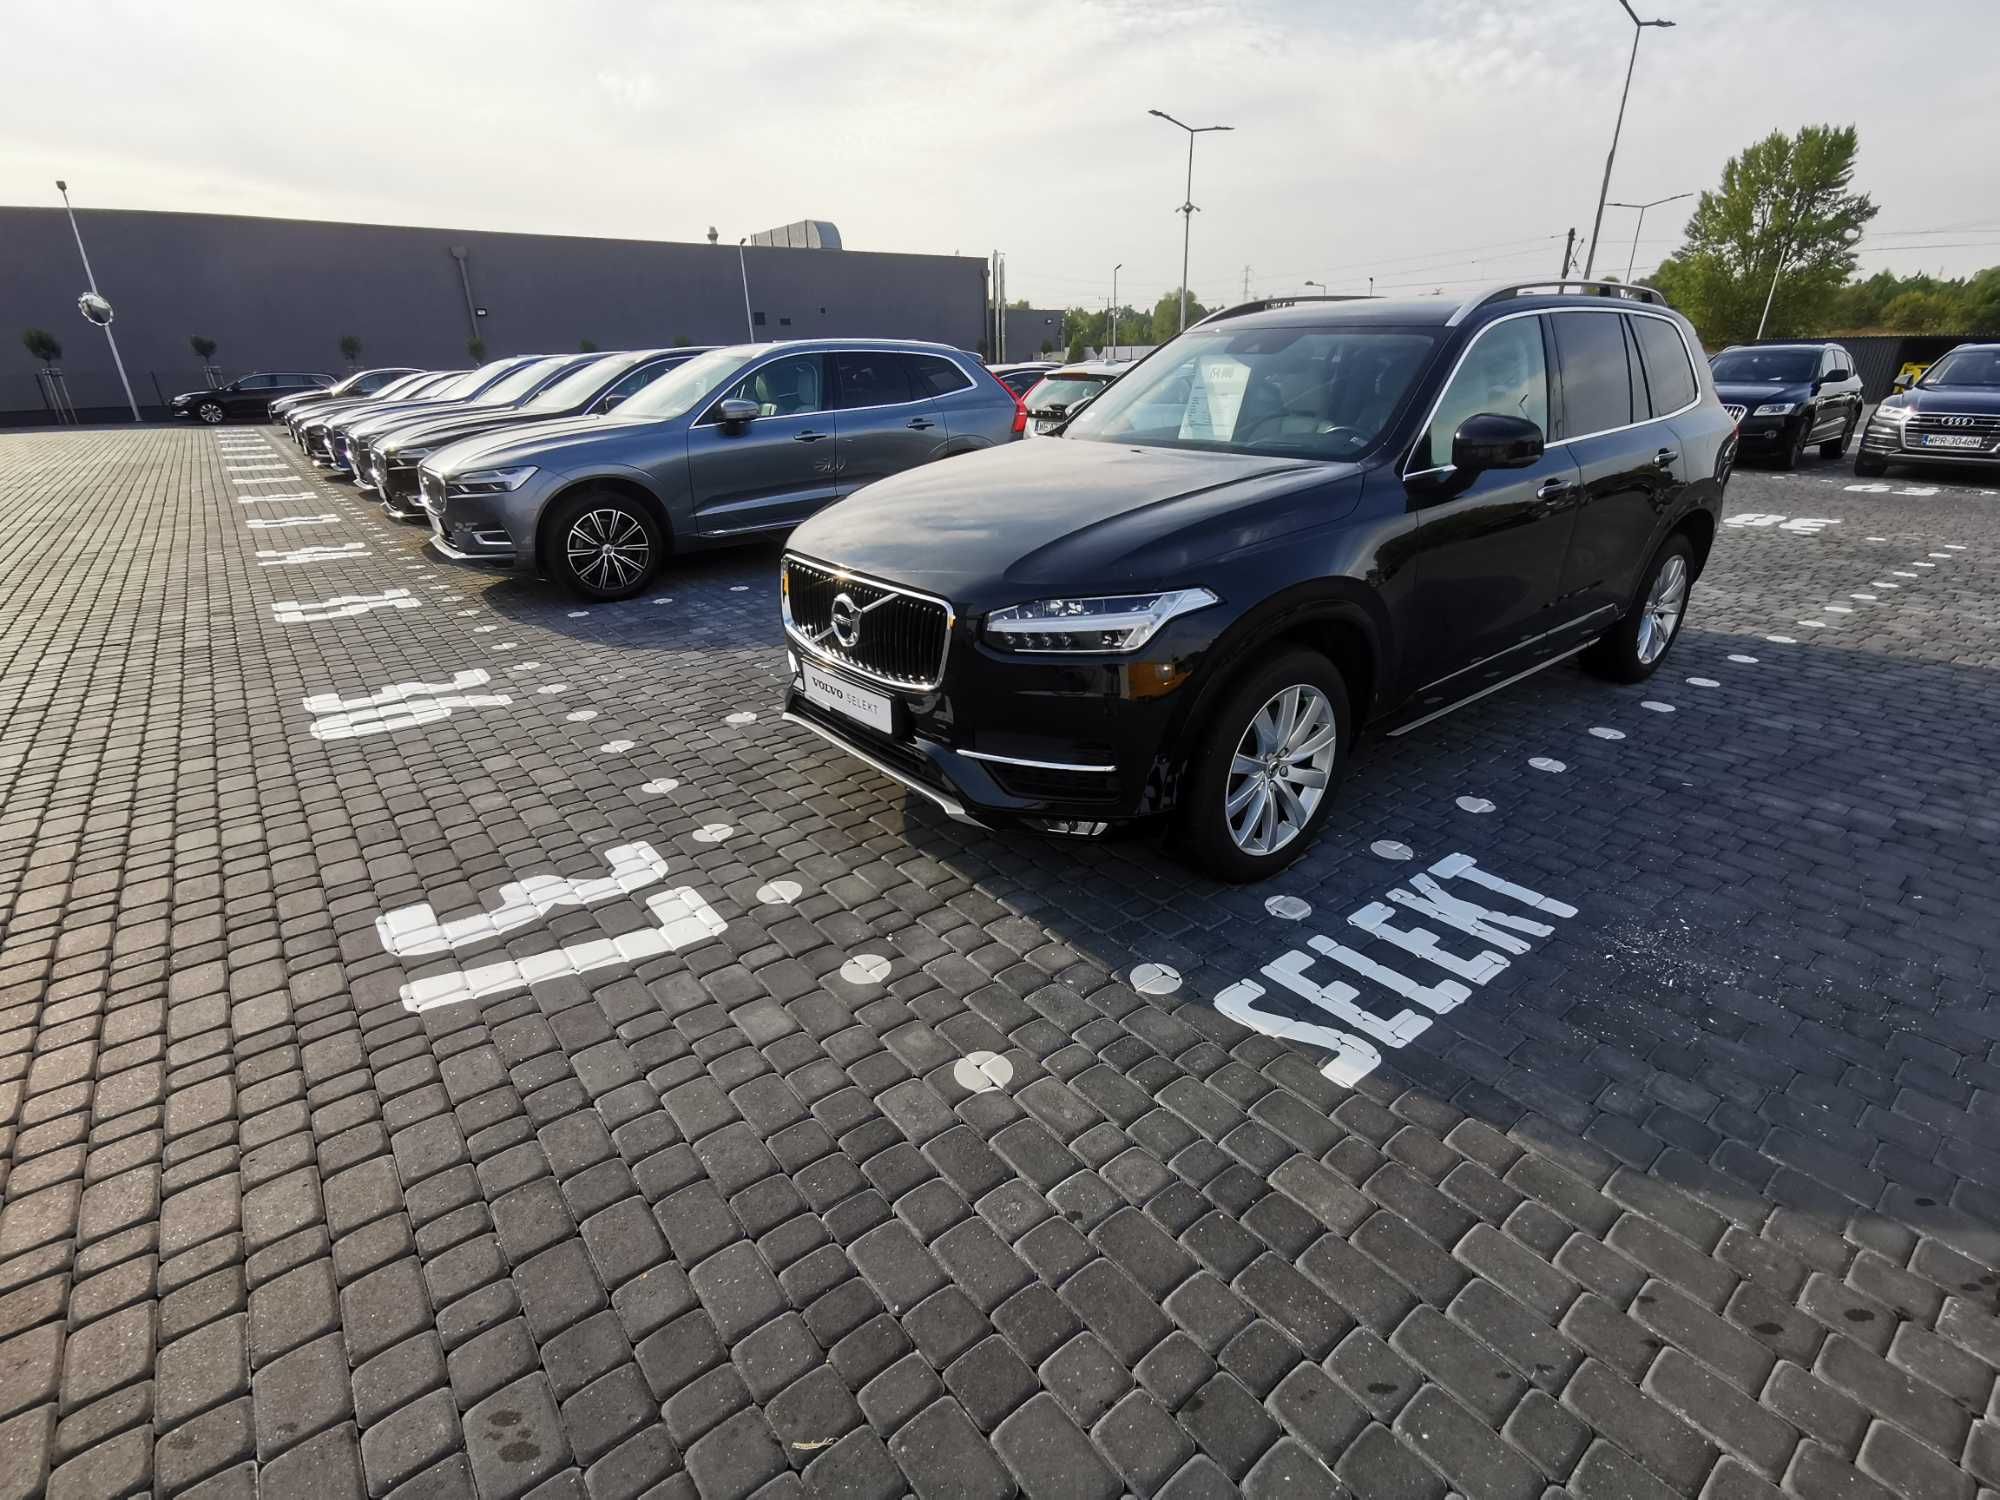 znaki oznakowanie poziome malowanie pasów linie pasy parking